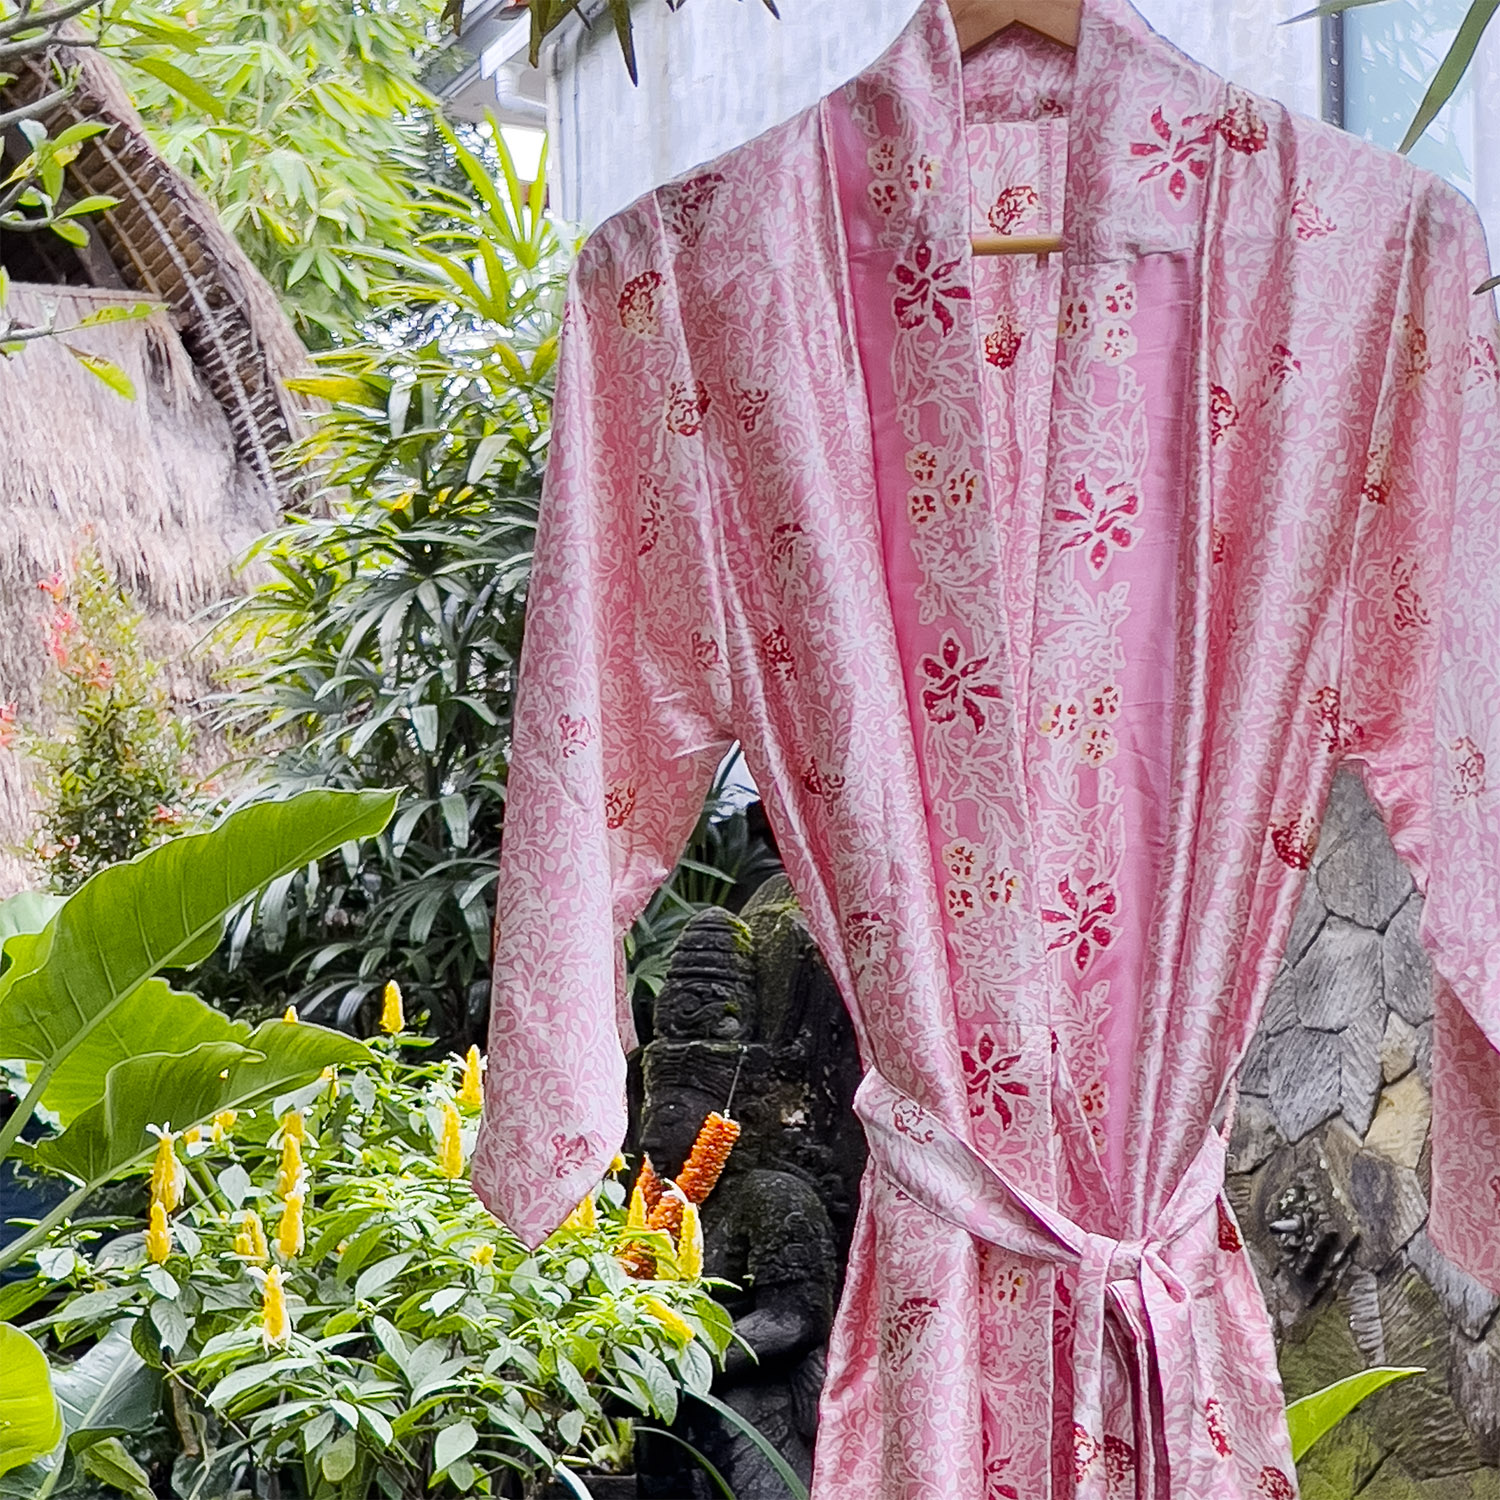 Silk Robes, fair fashion from Bali